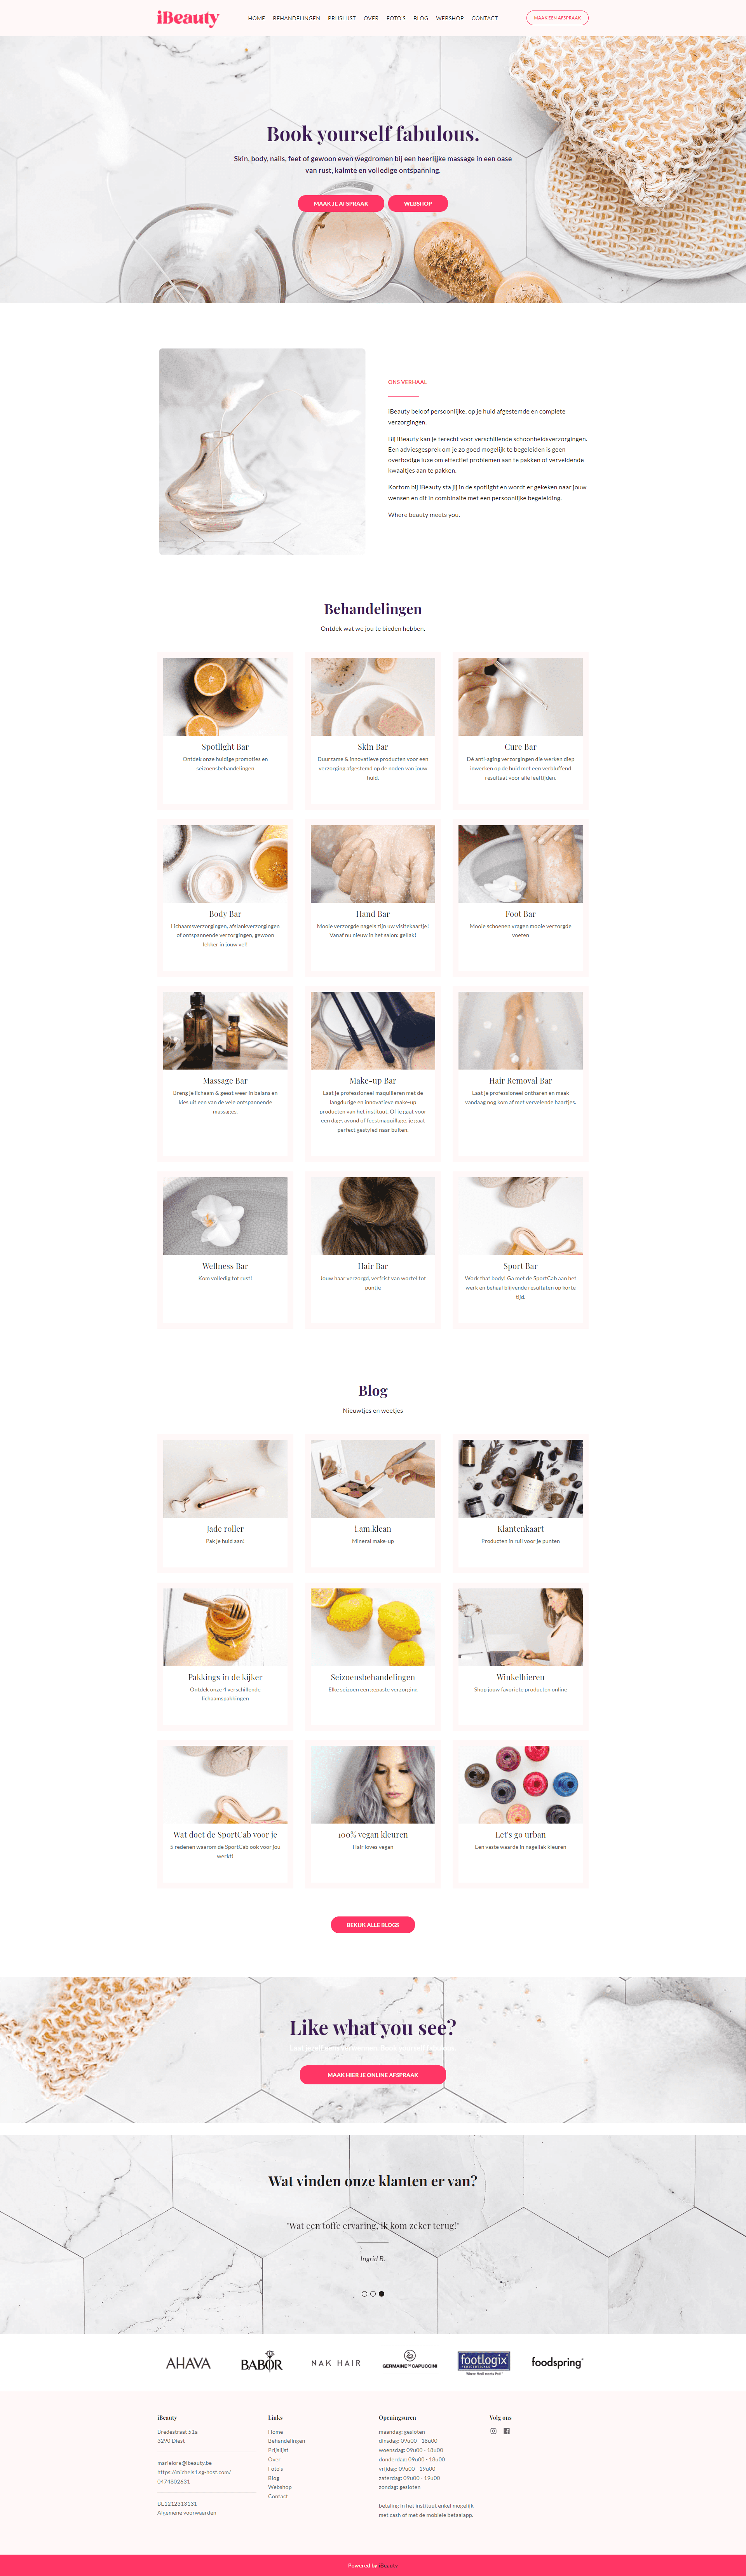 iBeauty website voor schoonheidssalons